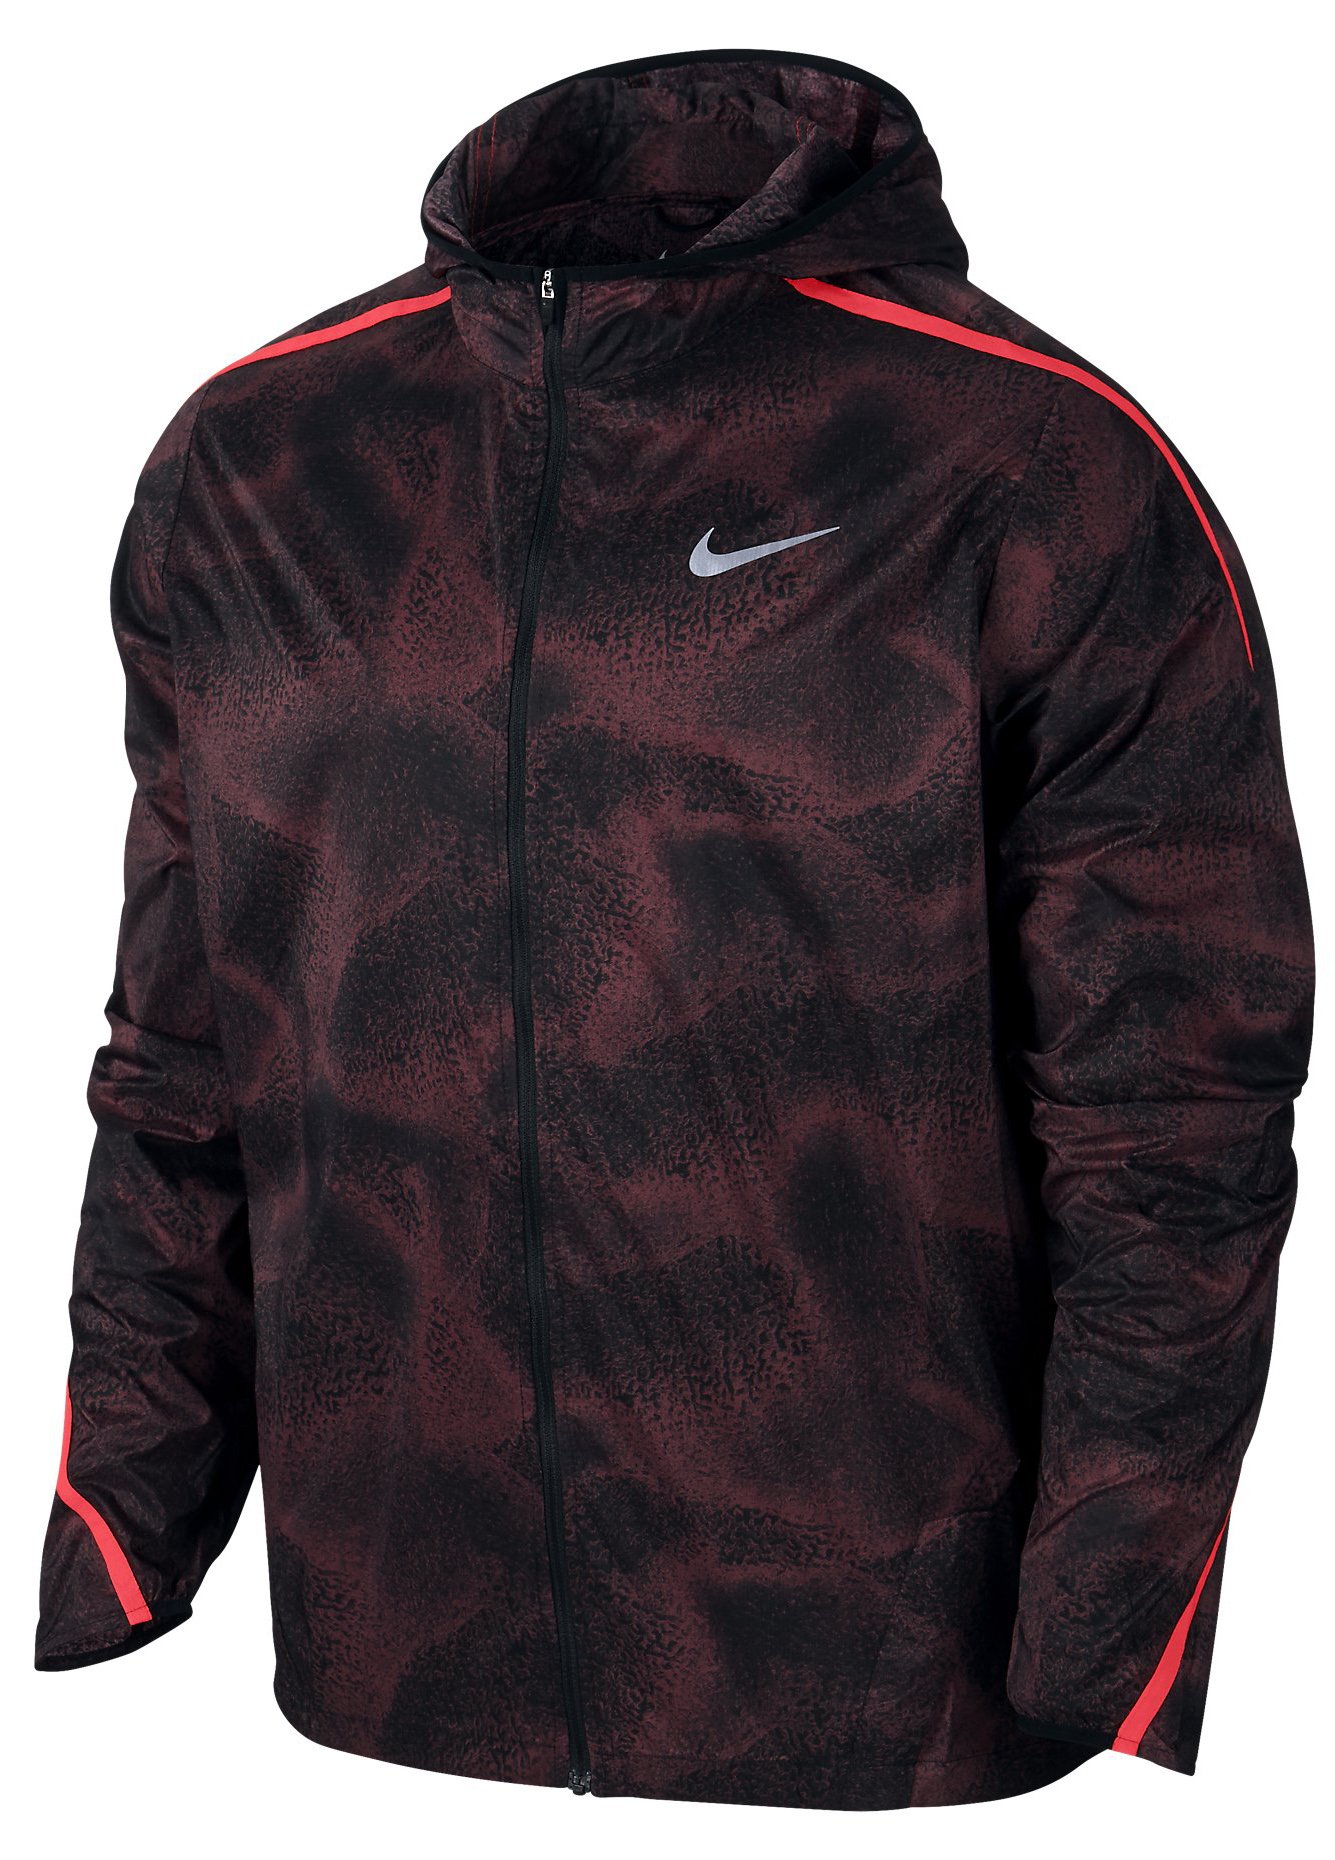 Pánská běžecká bunda s kapucí Nike Shield Impossibly Light